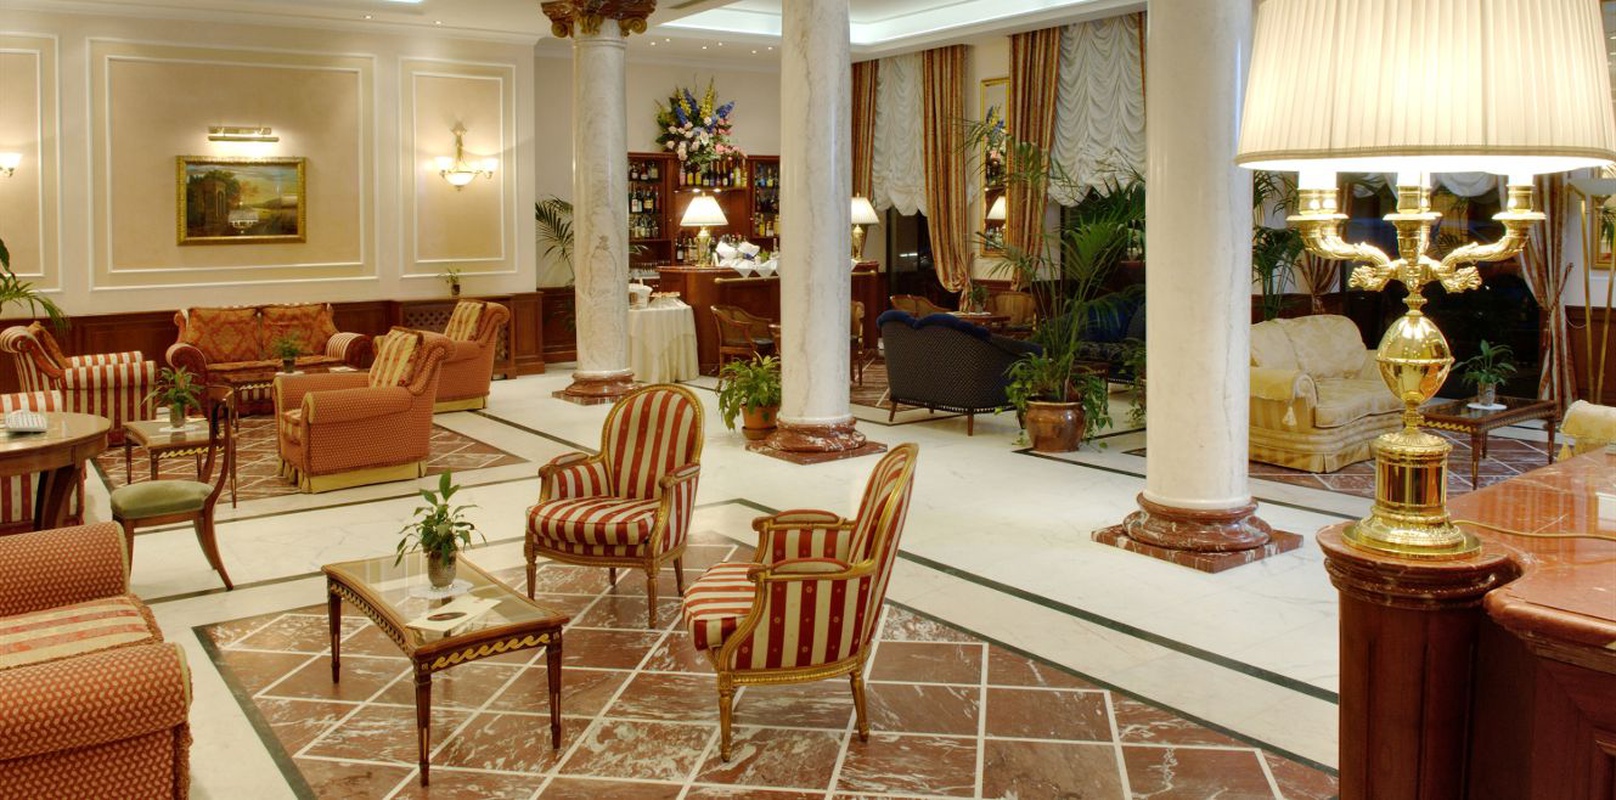 最高の体験をお楽しみください のアンドレオラ・セントラル ・ホテル ミラノ